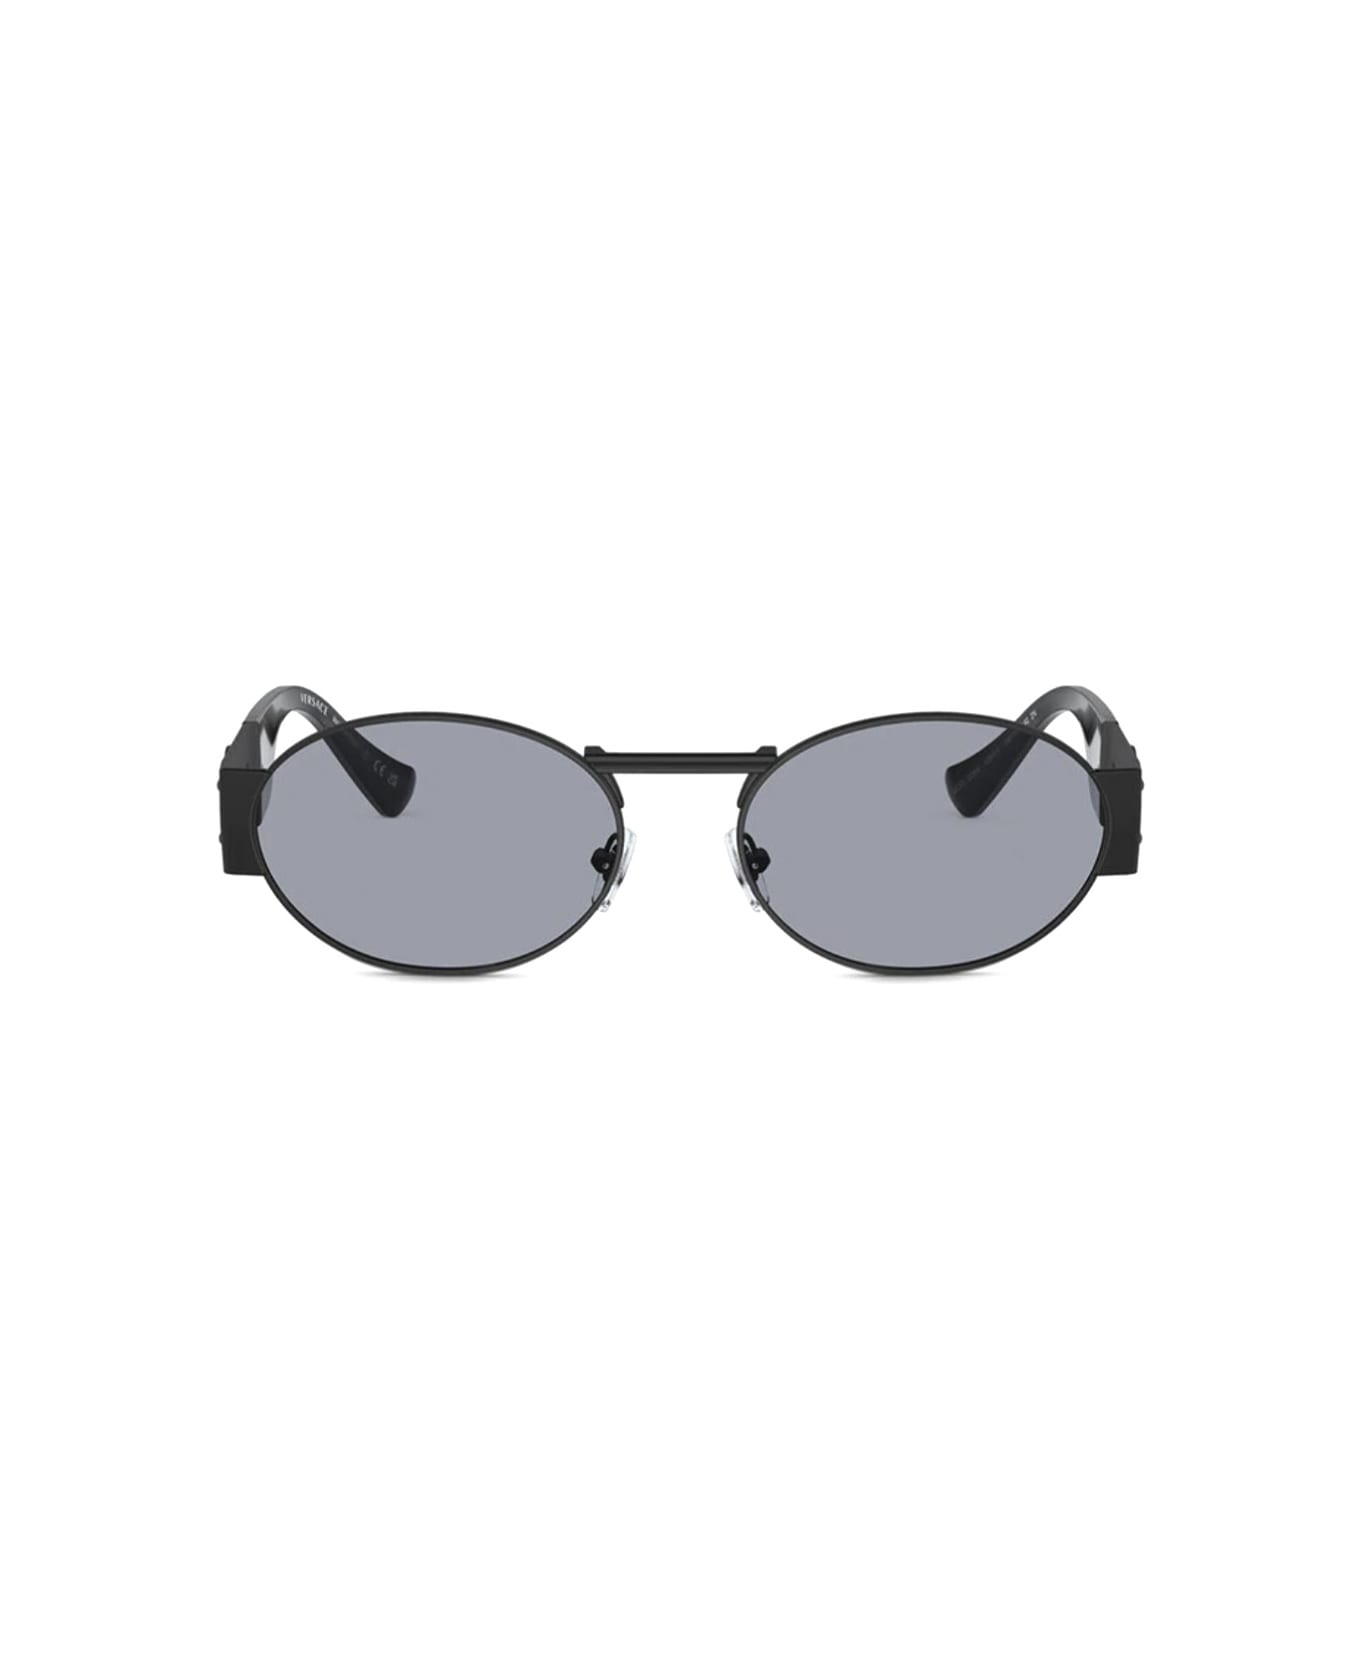 Versace Eyewear Ve2264 1261/1 Sunglasses - Nero サングラス